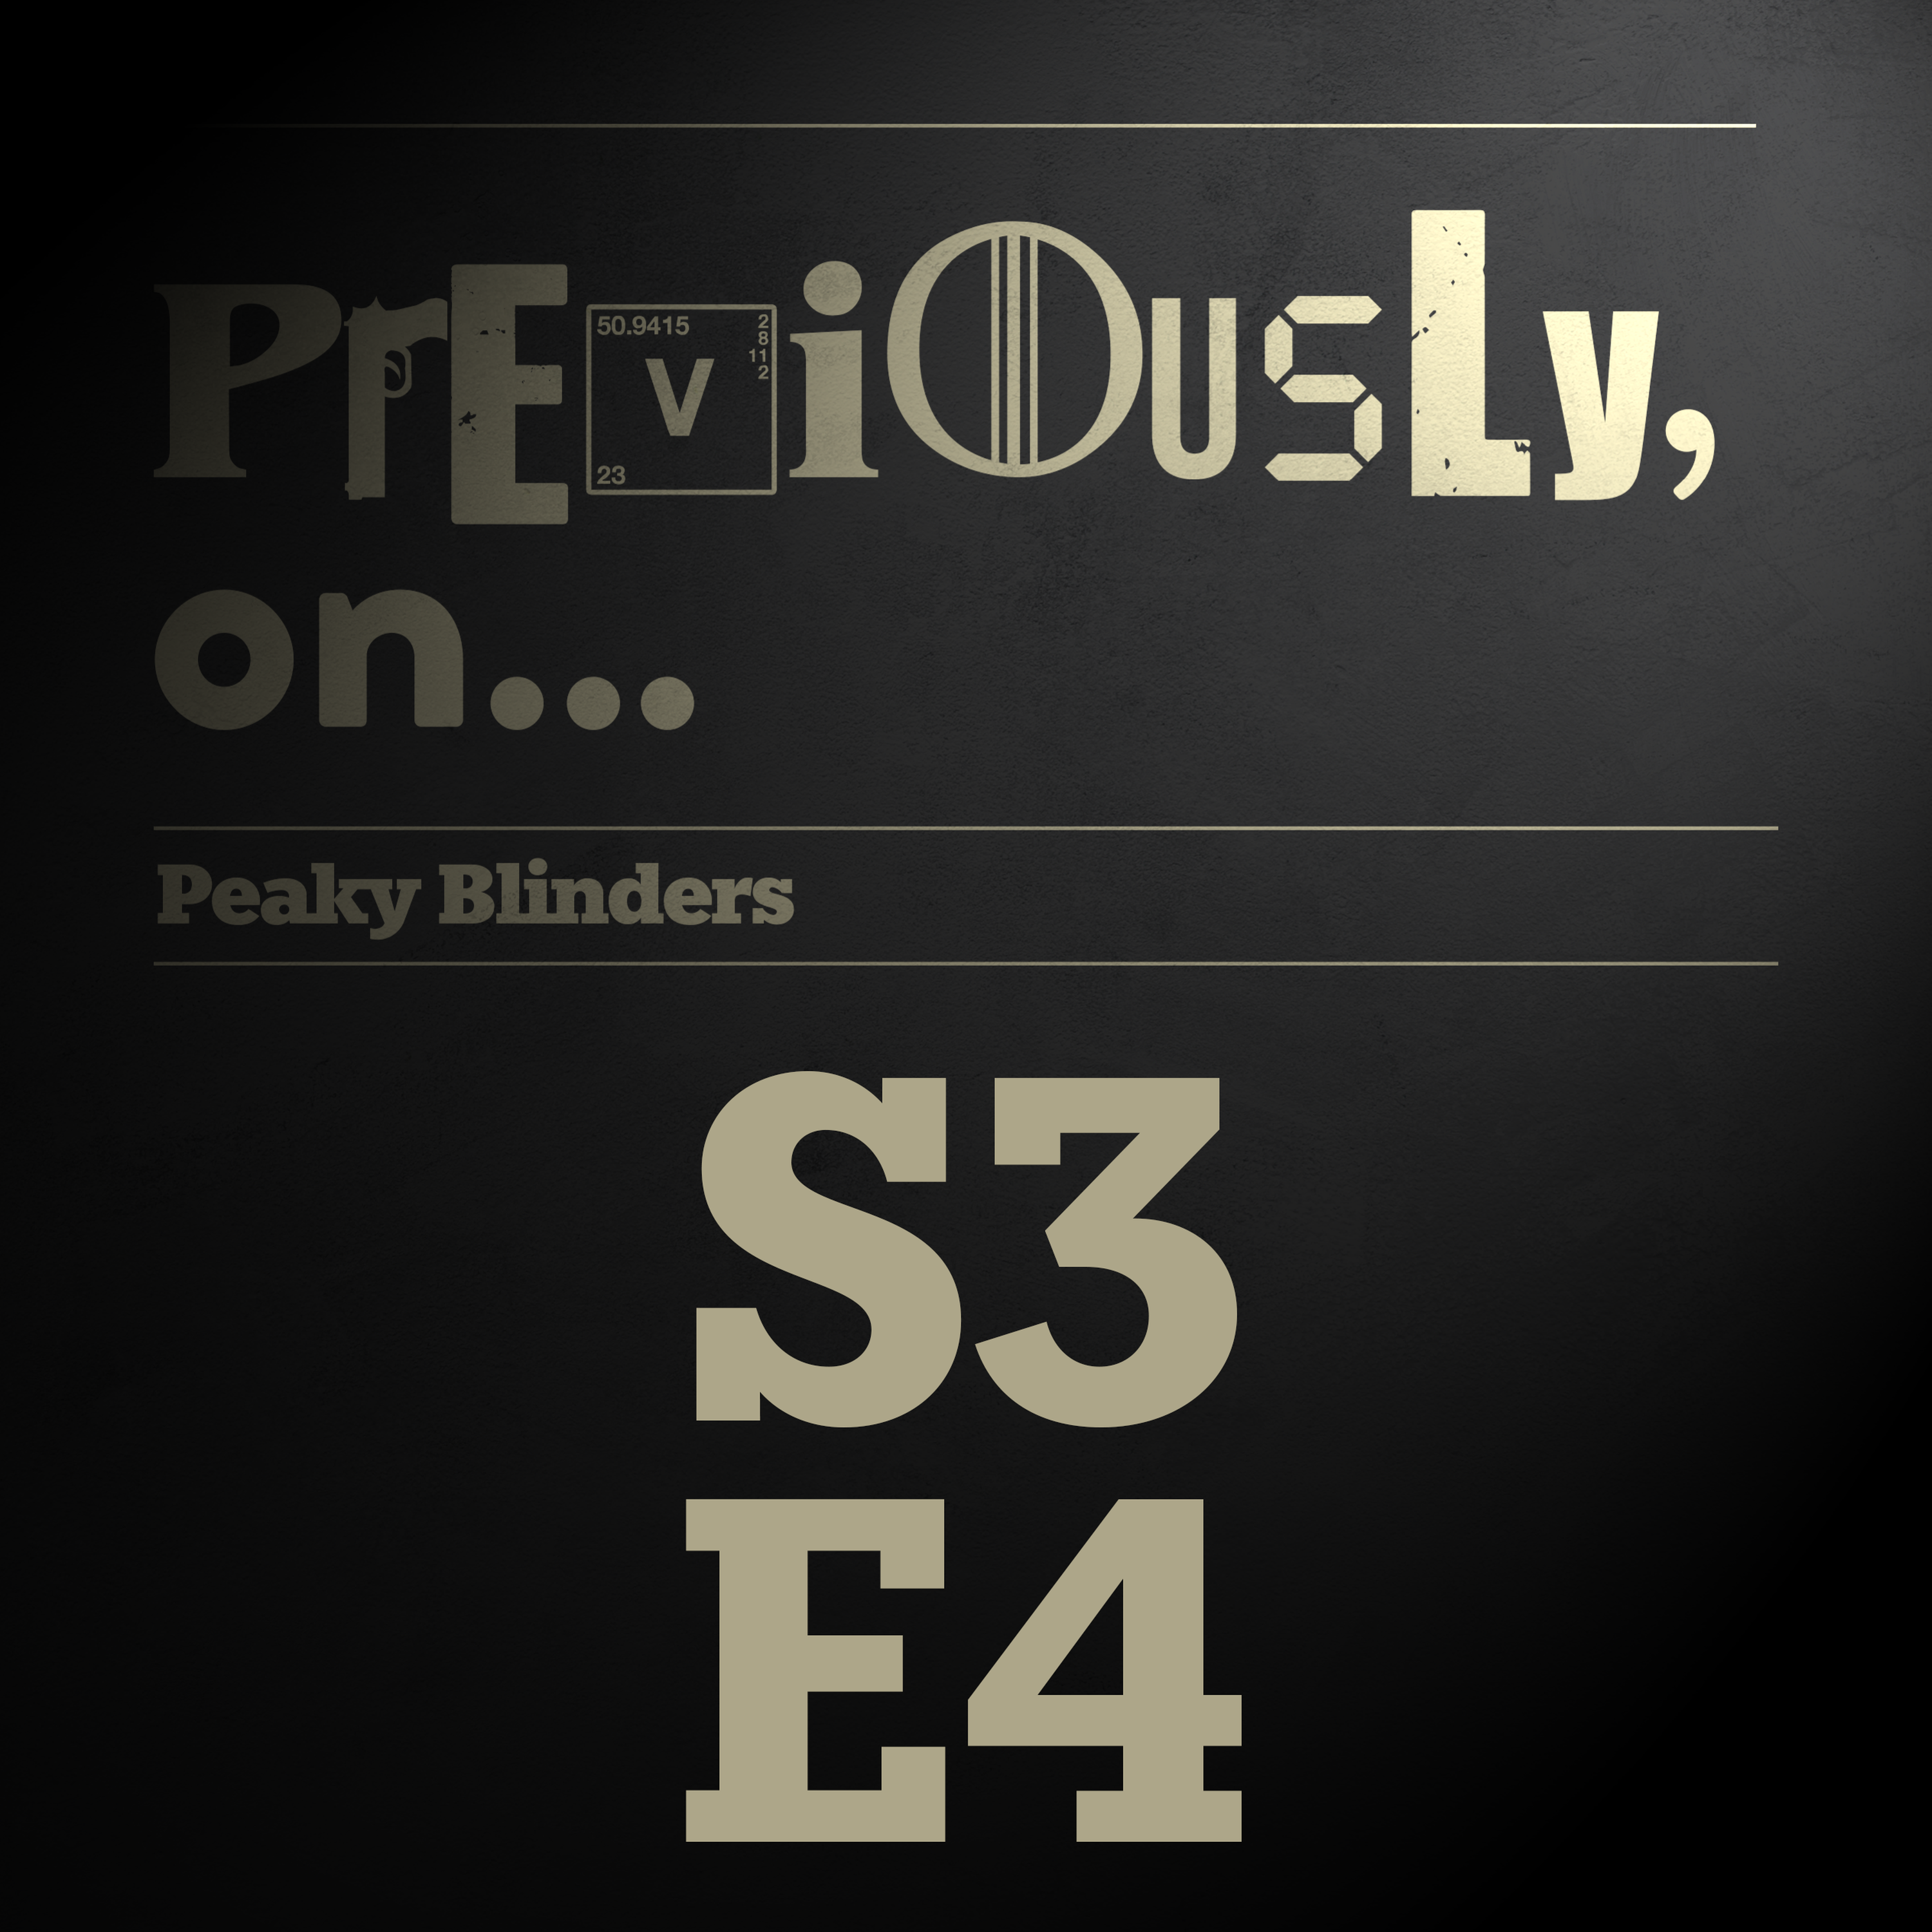 Peaky Blinders S3E4